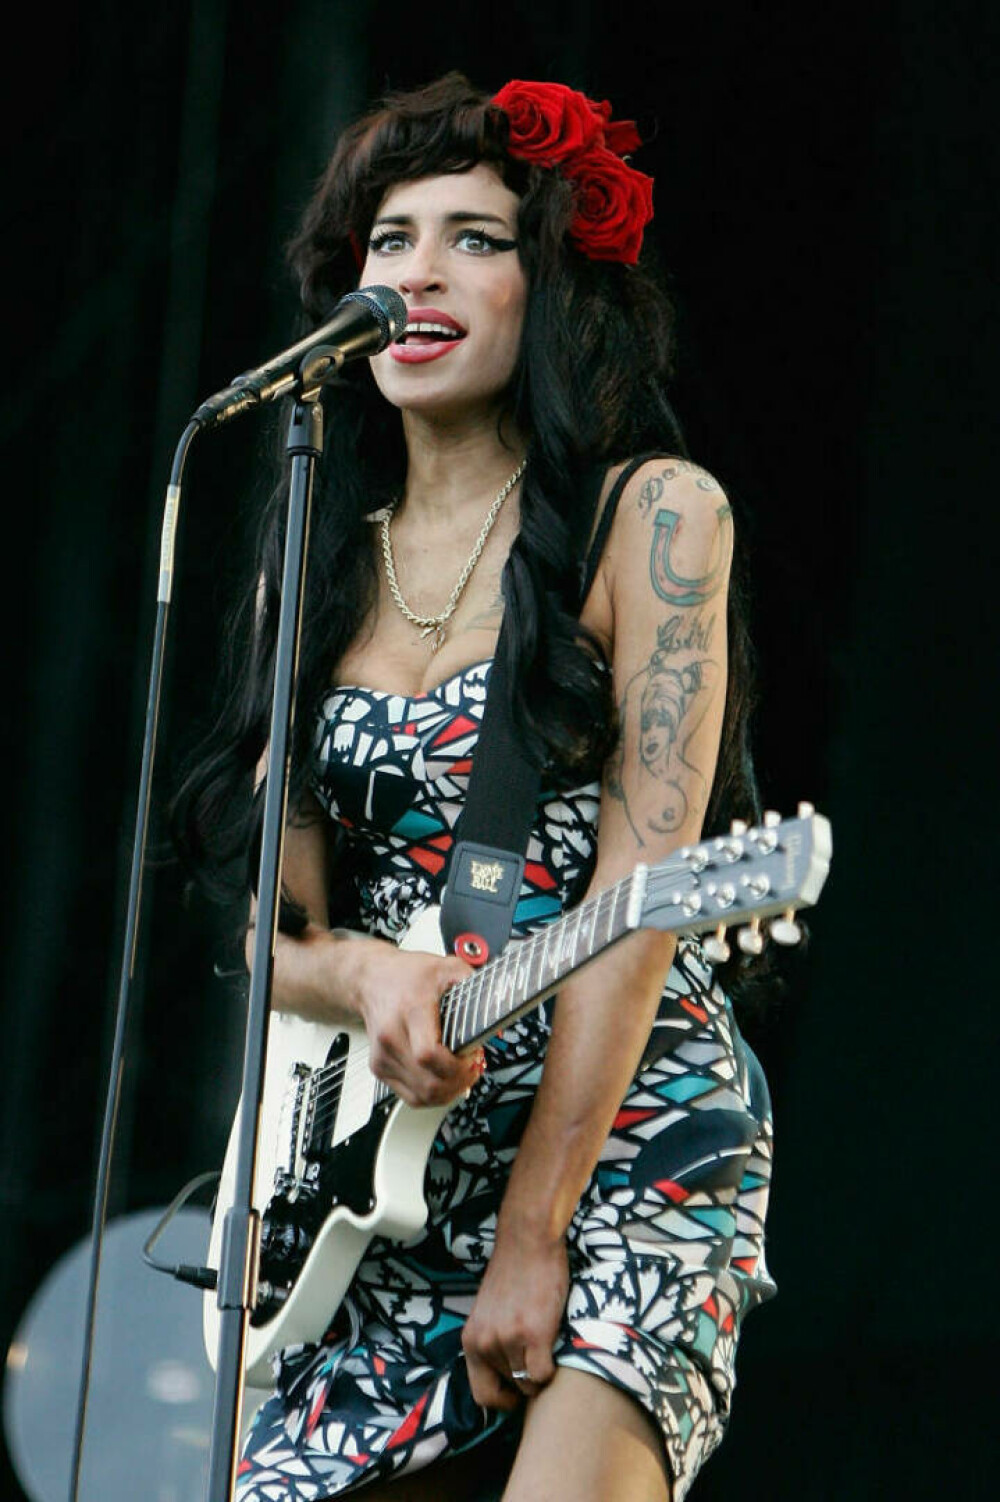 Imagini de colecție cu Amy Winehouse. Cântăreața ar fi împlinit astăzi 40 de ani | FOTO - Imaginea 3